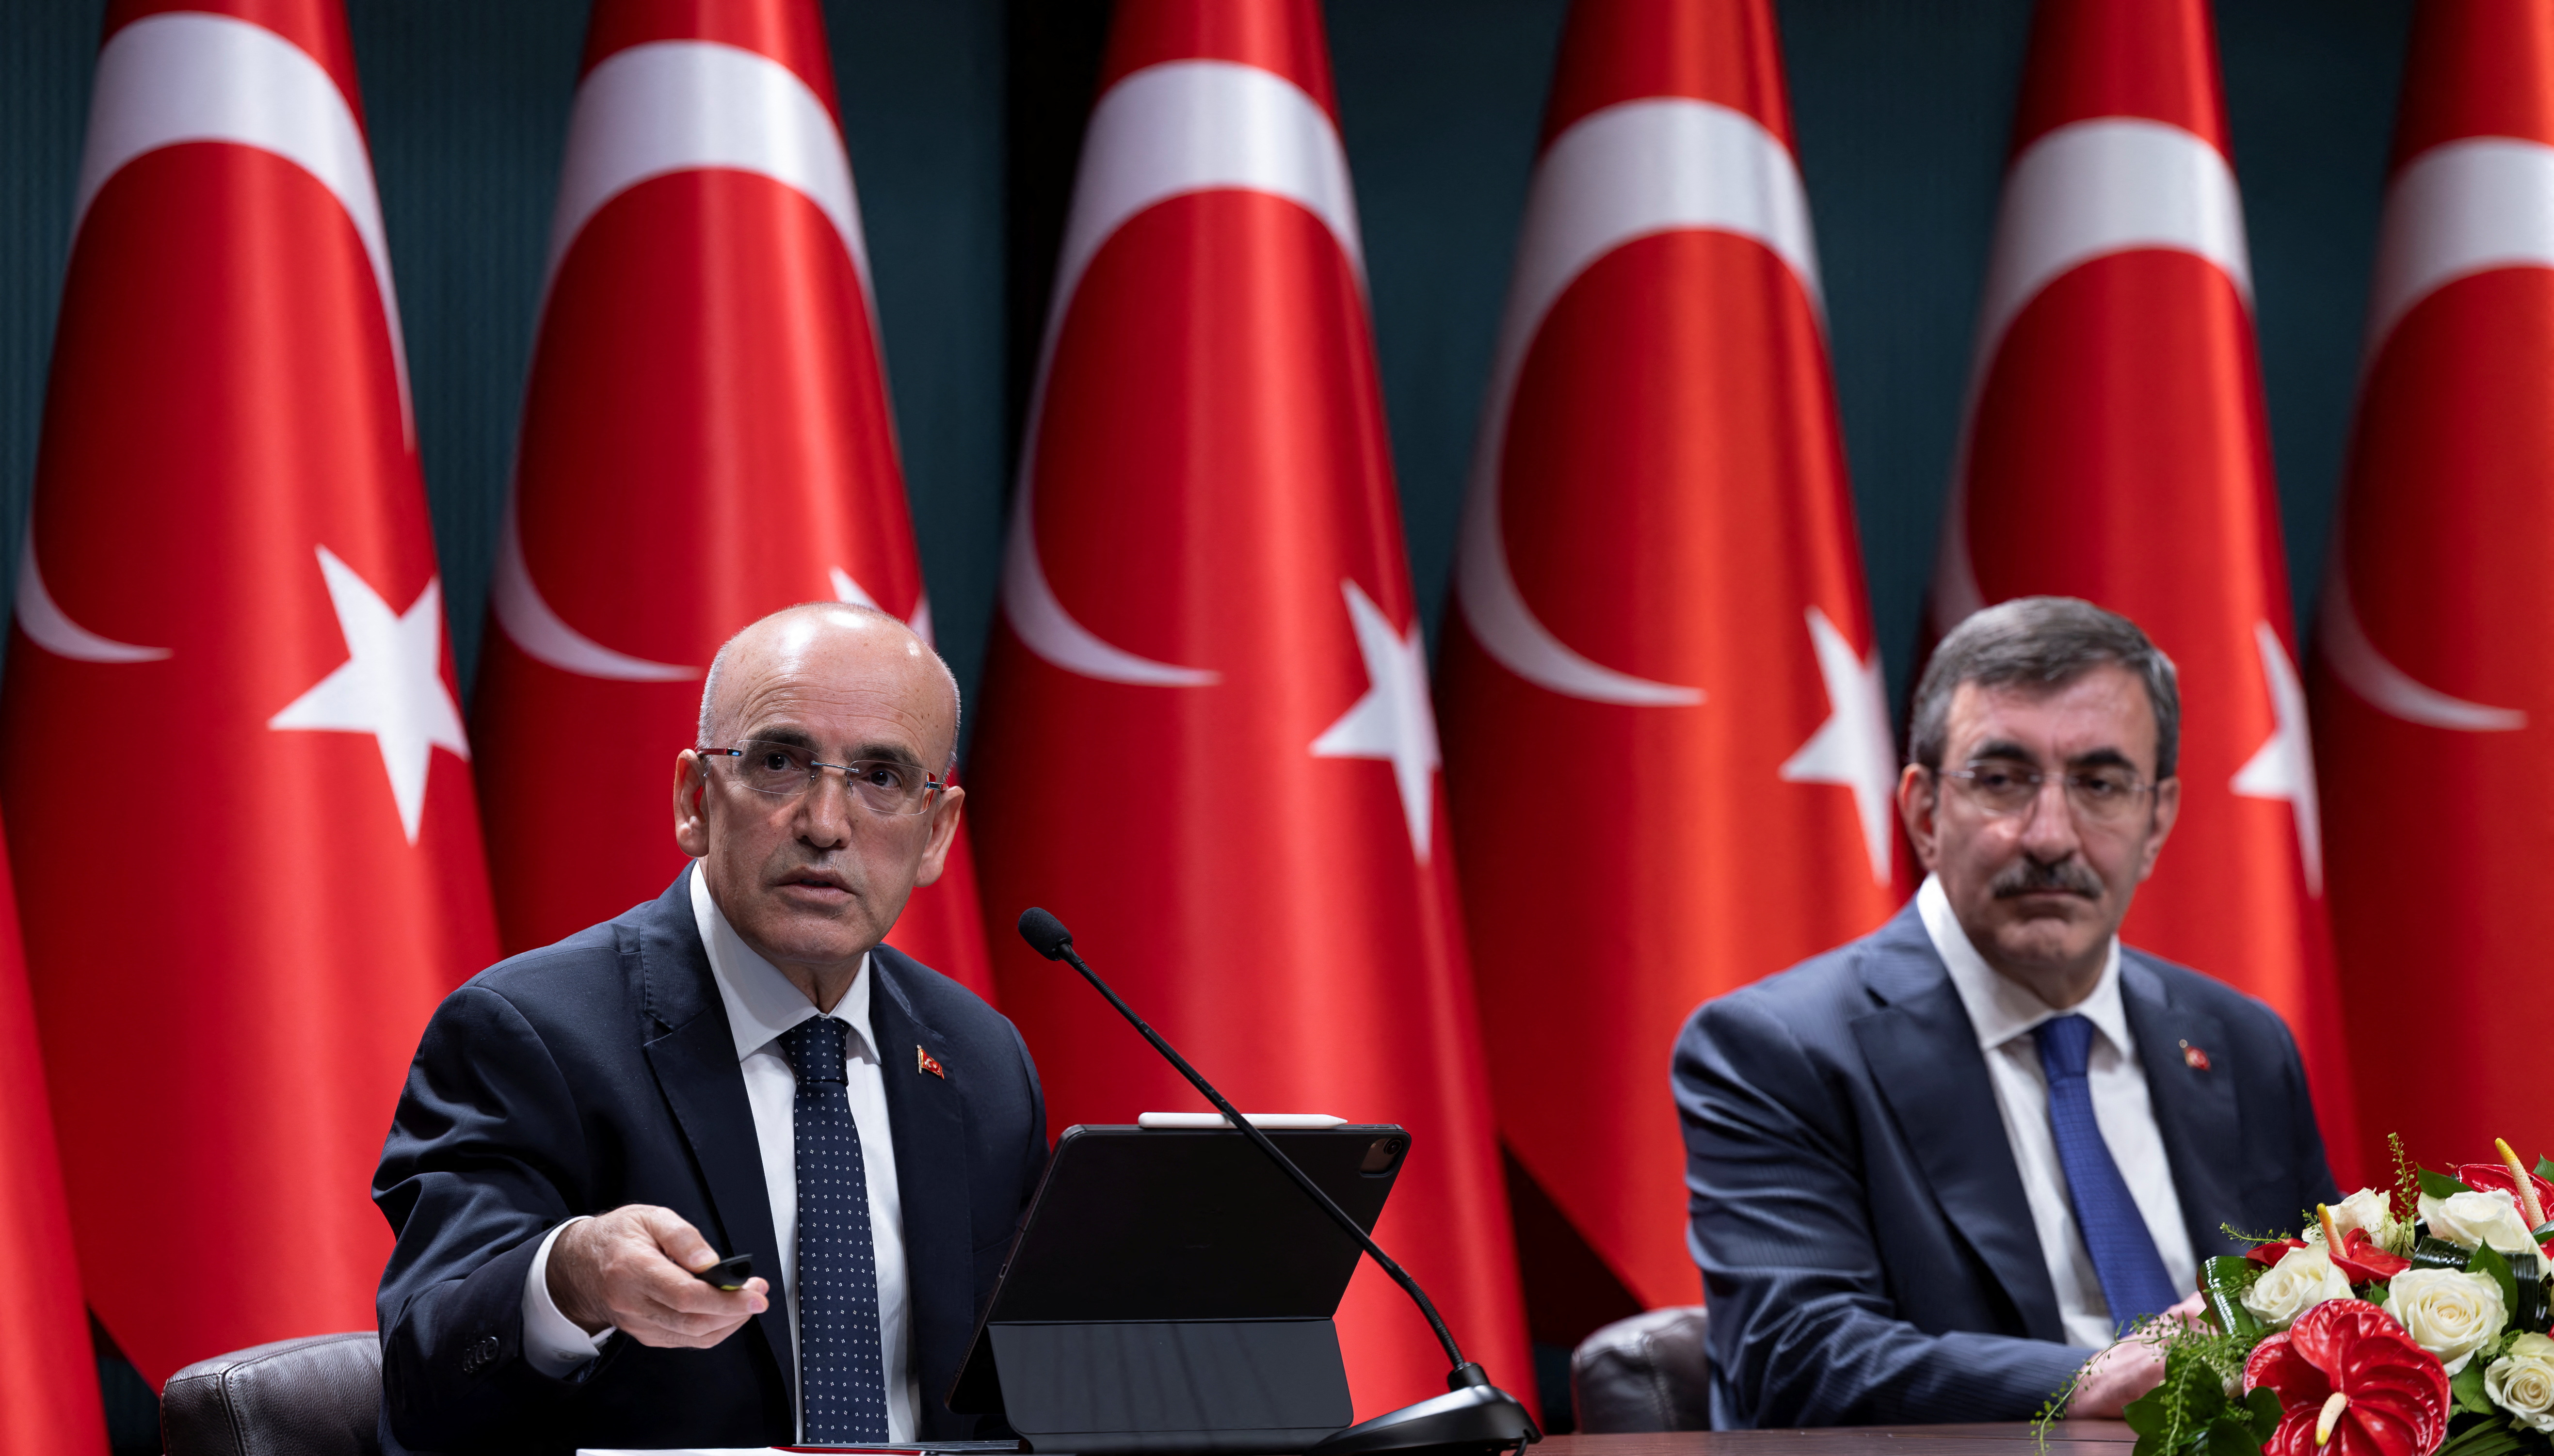 トルコが包括的な財政緊縮策、歳出削減や公共投資絞り込みへ